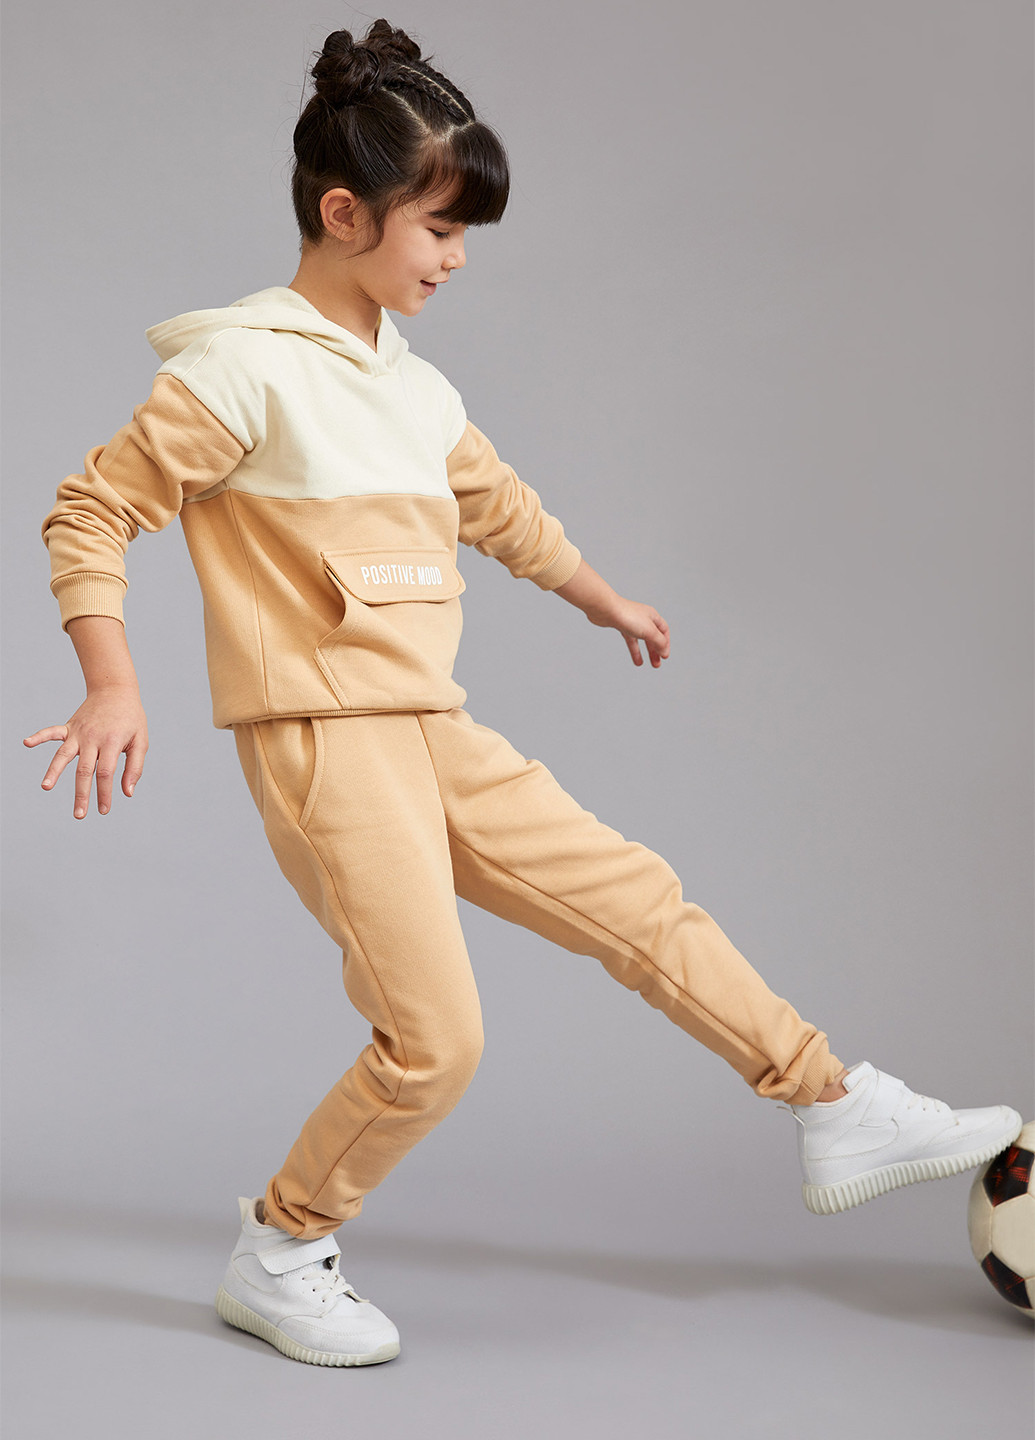 Комплект(свитшот, брюки) DeFacto брючный светло-бежевый спортивный трикотаж, хлопок